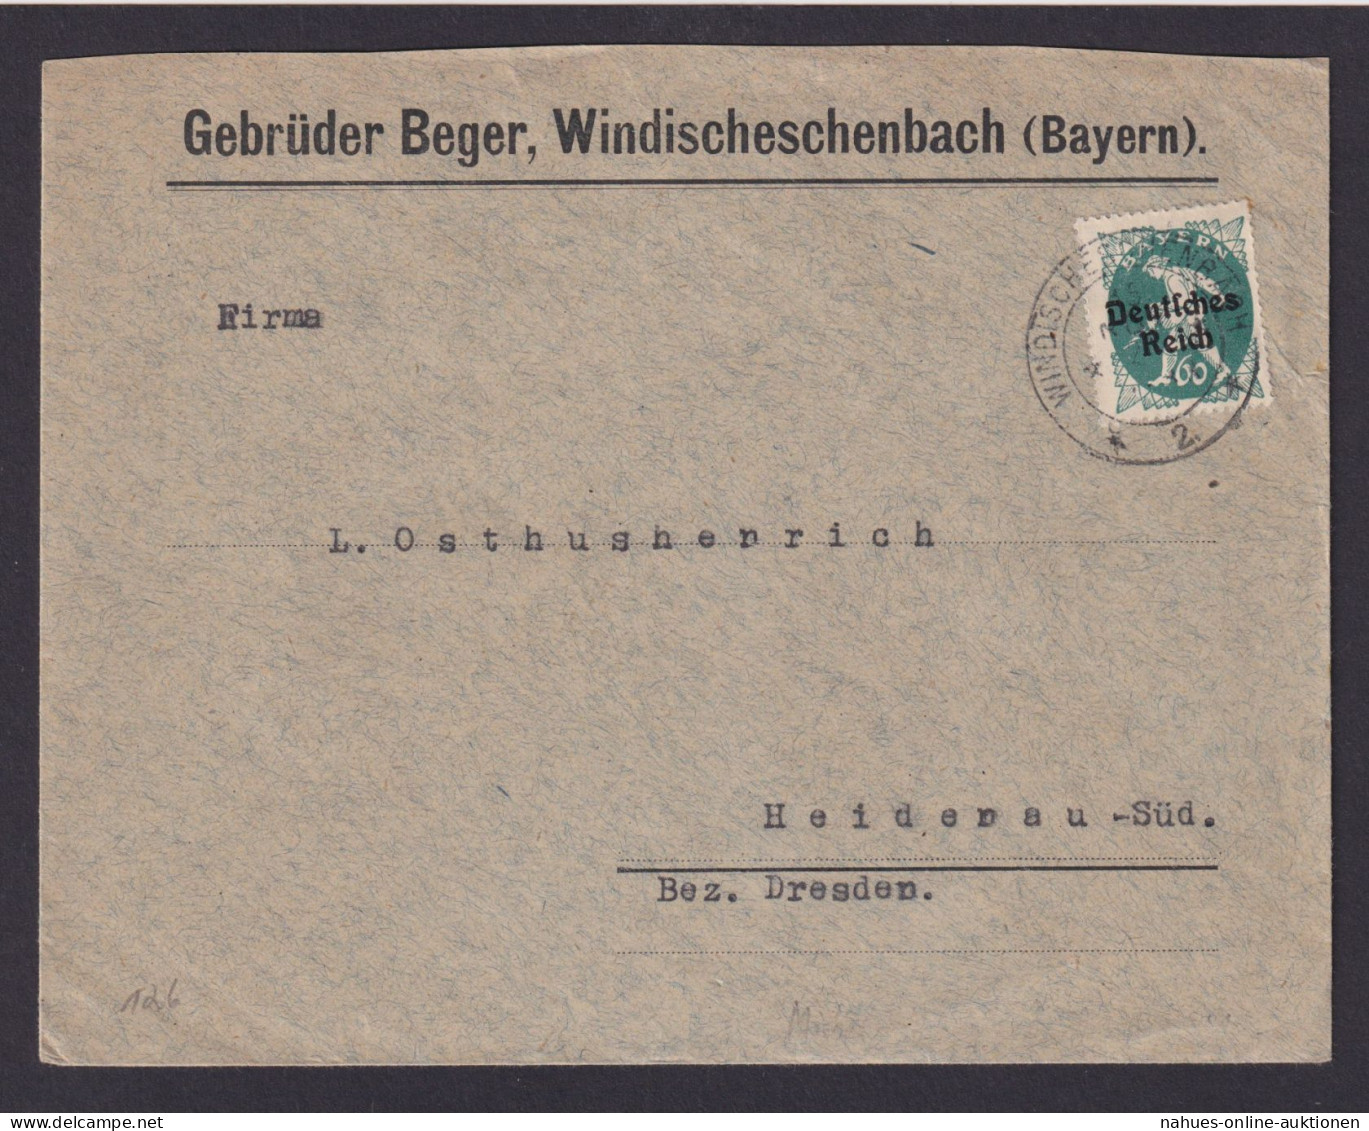 Deutsches Reich Windischeschenbach Bayern Geb. Berger Brief EF Bayern Abschied - Storia Postale